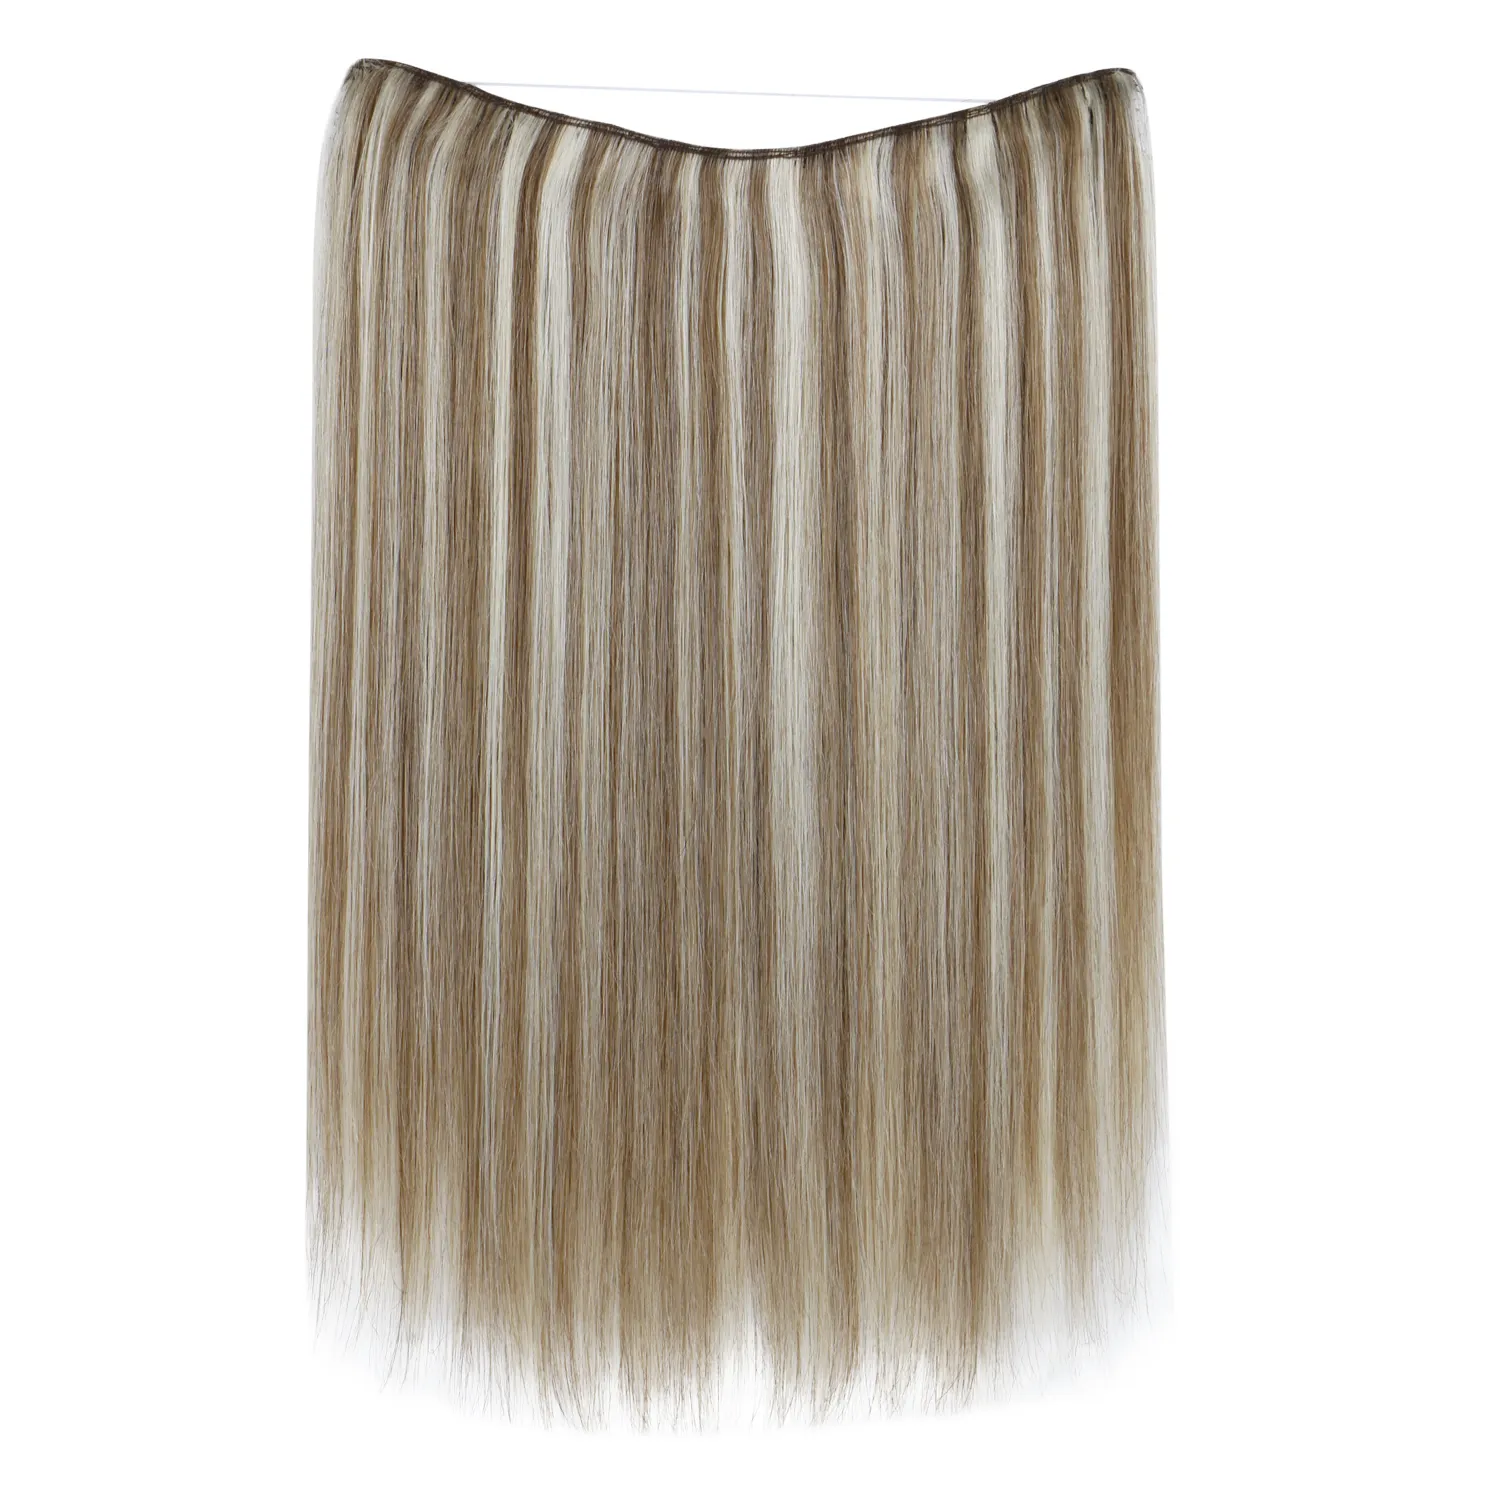 Extensão de cabelo, uma peça 18 polegadas 80g cabelo humano real onda reta fio invisível banda de extensão de cabelo